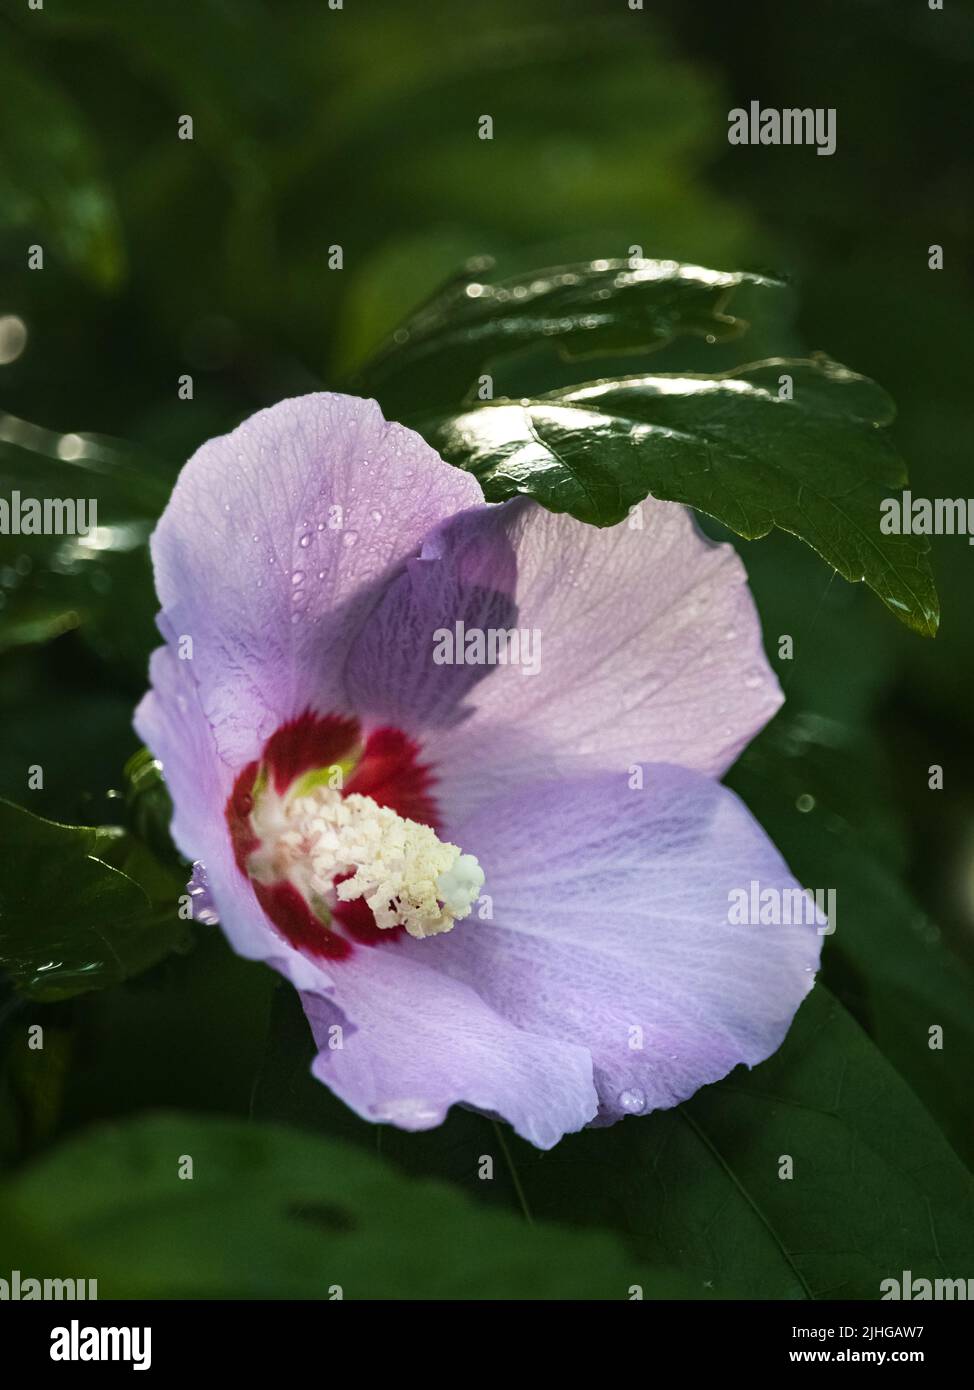 Rosa o púrpura Rosa de Sharon flores, Hibiscus syriacus, sobre un fondo verde oscuro y exuberante bajo la luz del sol en verano o otoño, Lancaster, Pennsylvania Foto de stock